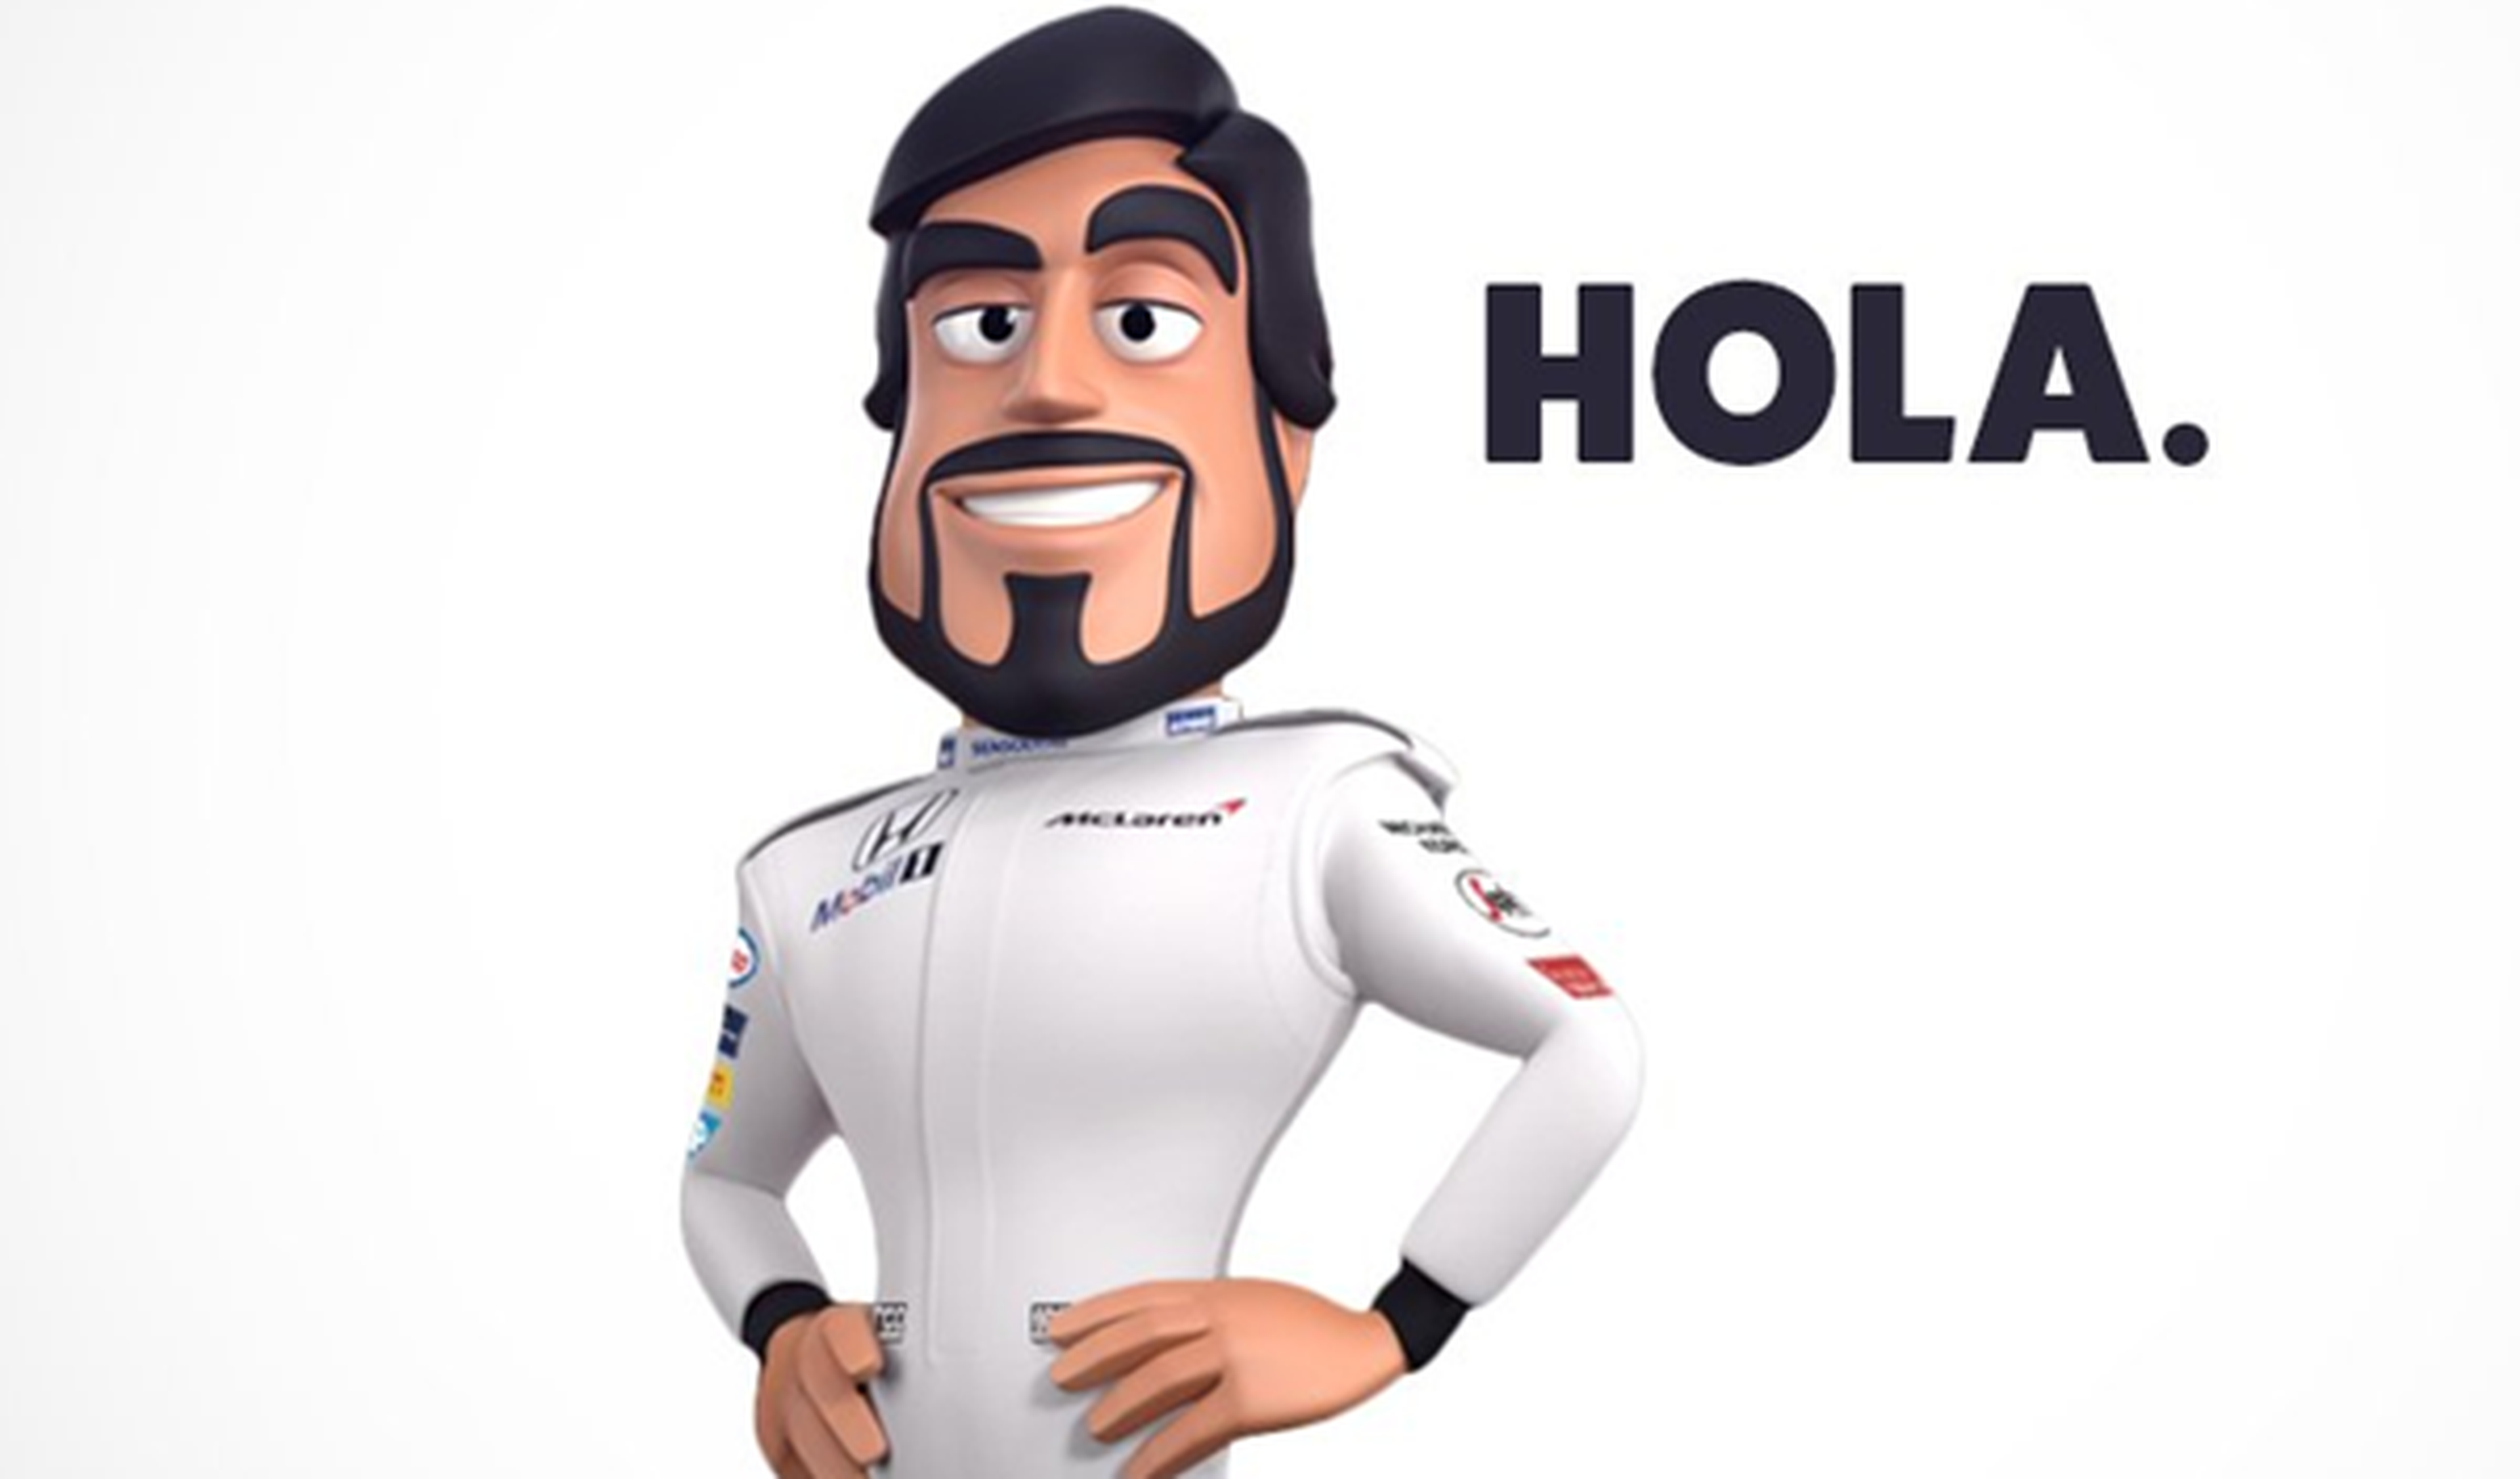 McLaren convierte a Alonso en un dibujo animado